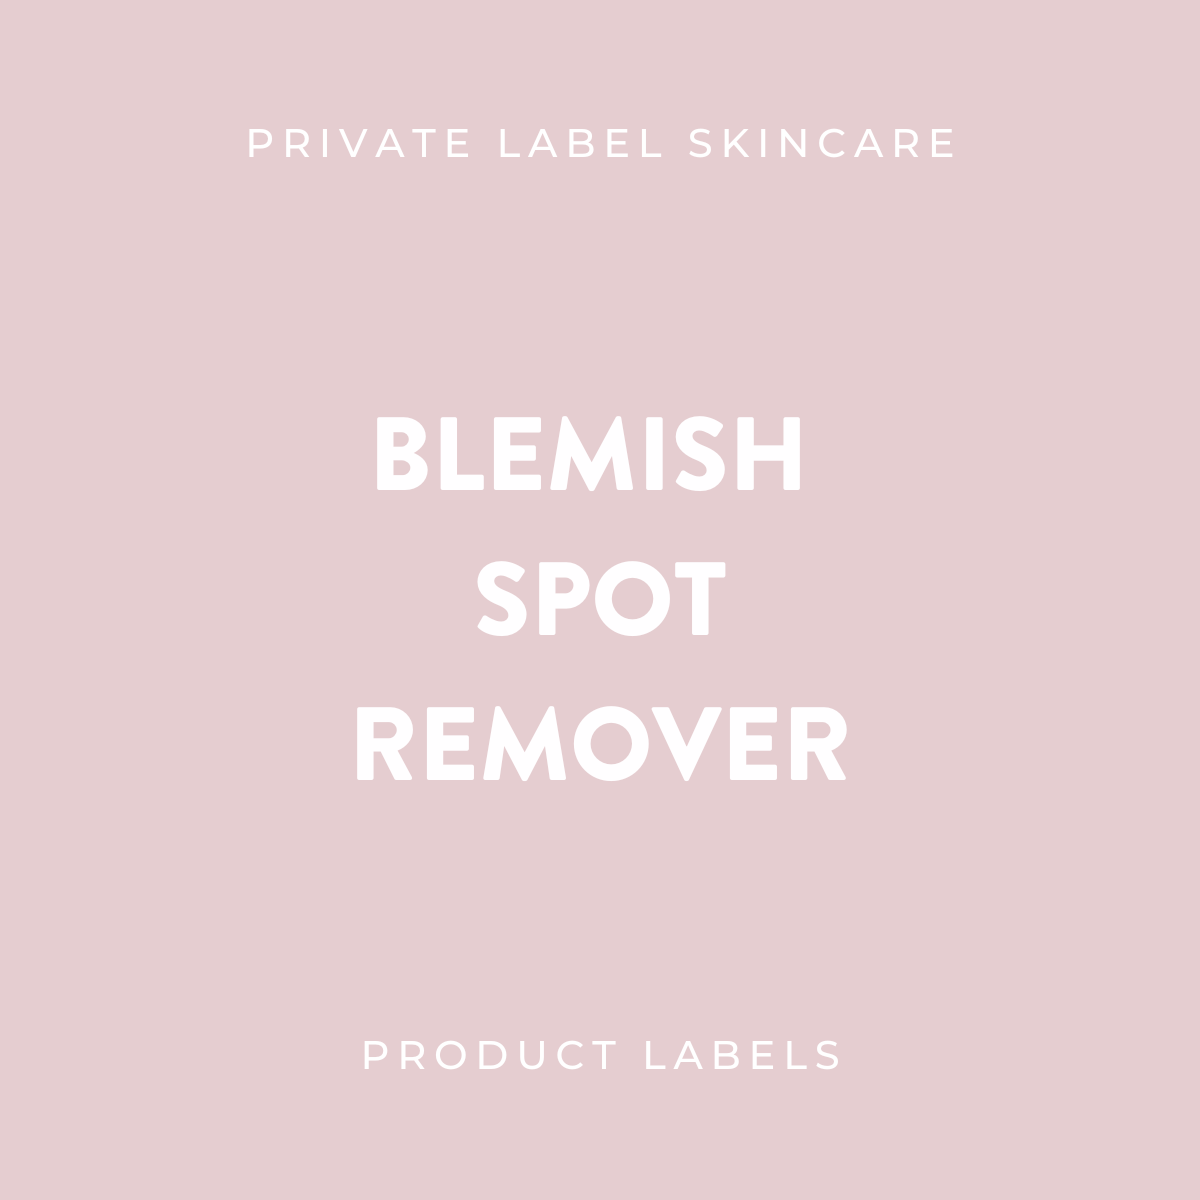 Blemish Spot Remover Product Labels (x 20 labels)